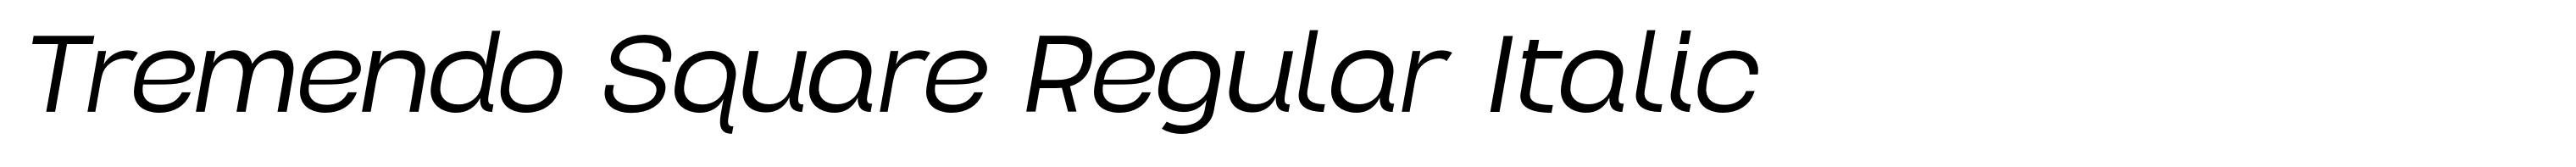 Tremendo Square Regular Italic